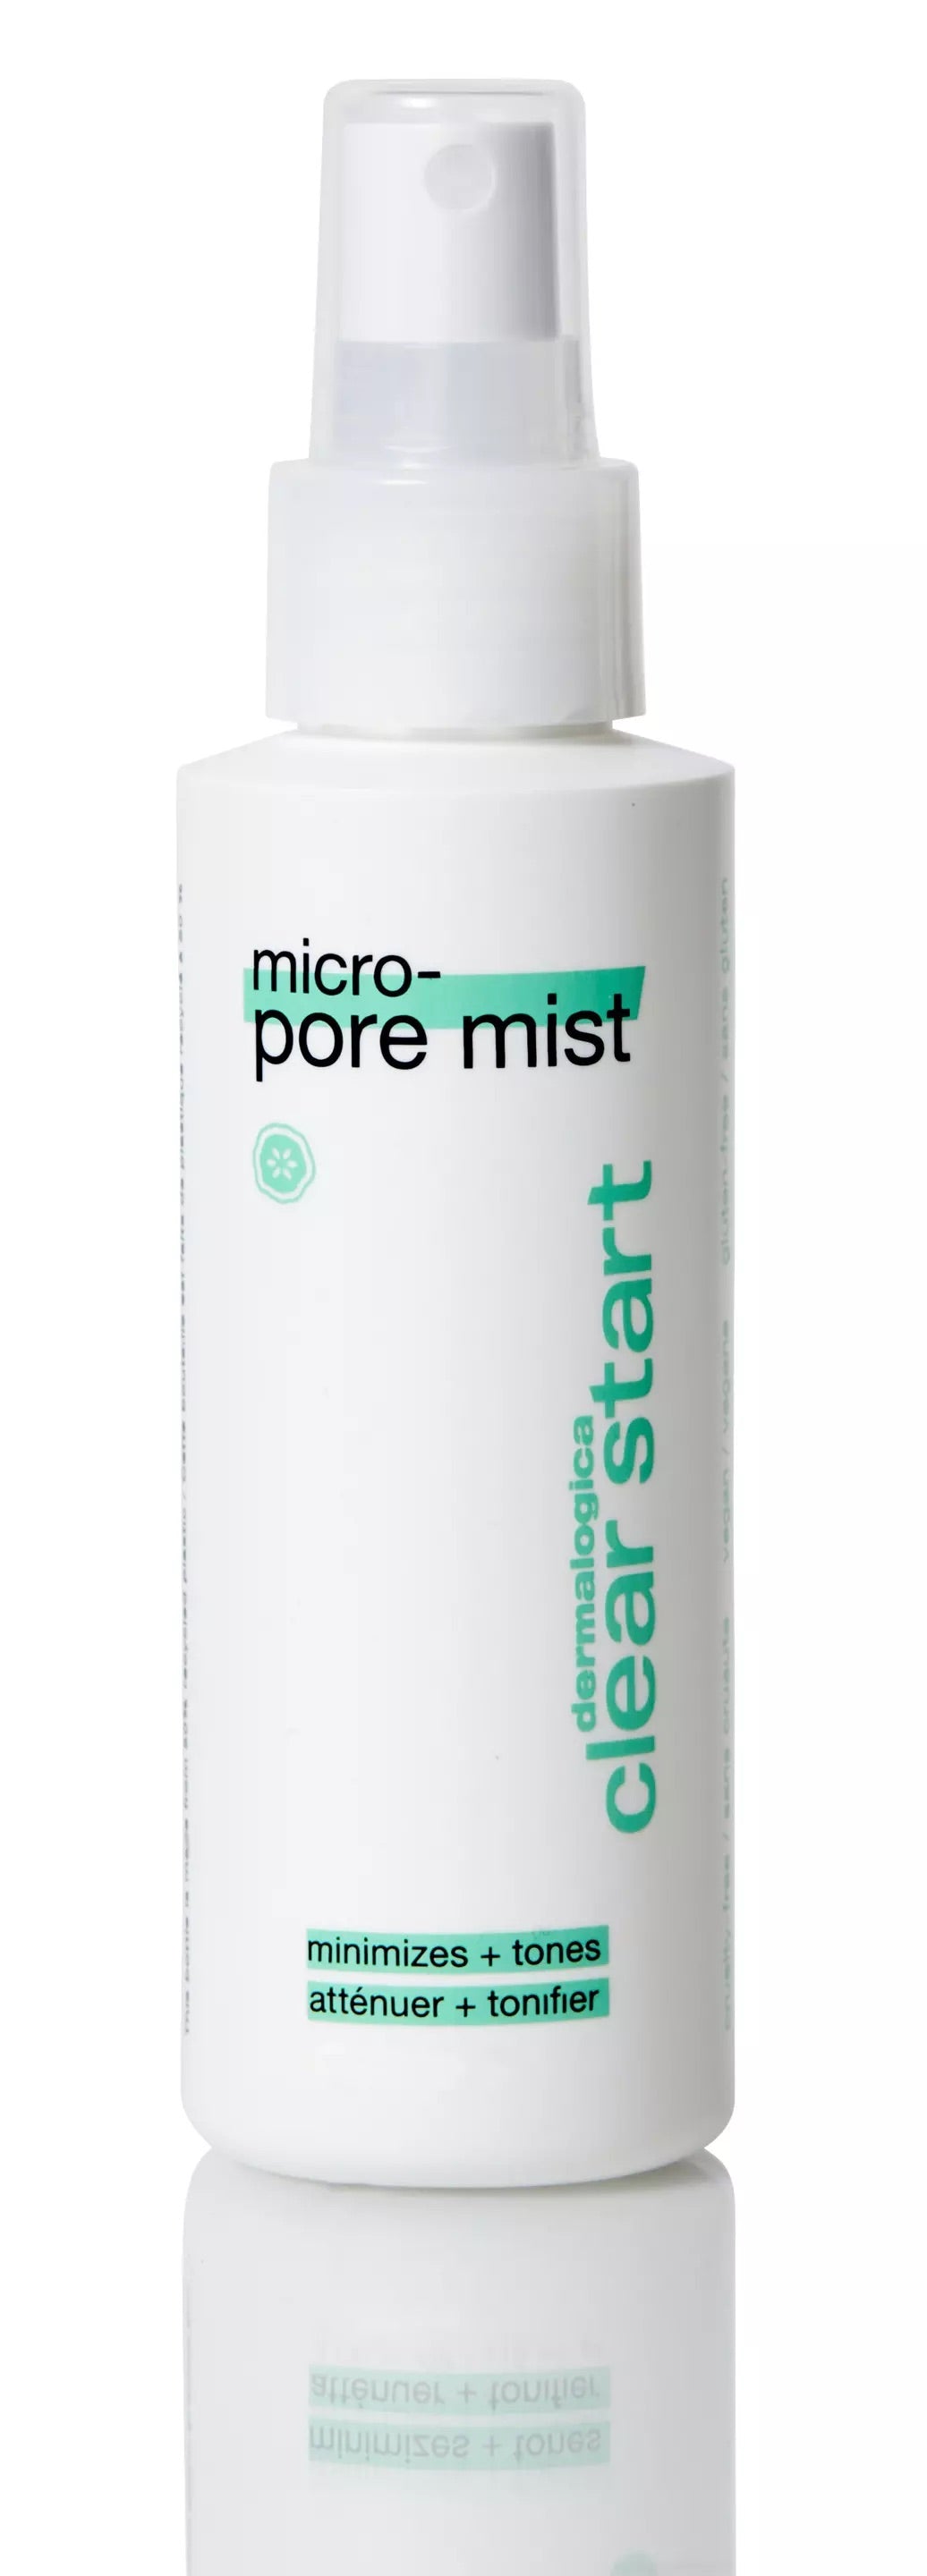 Micro-pore mist